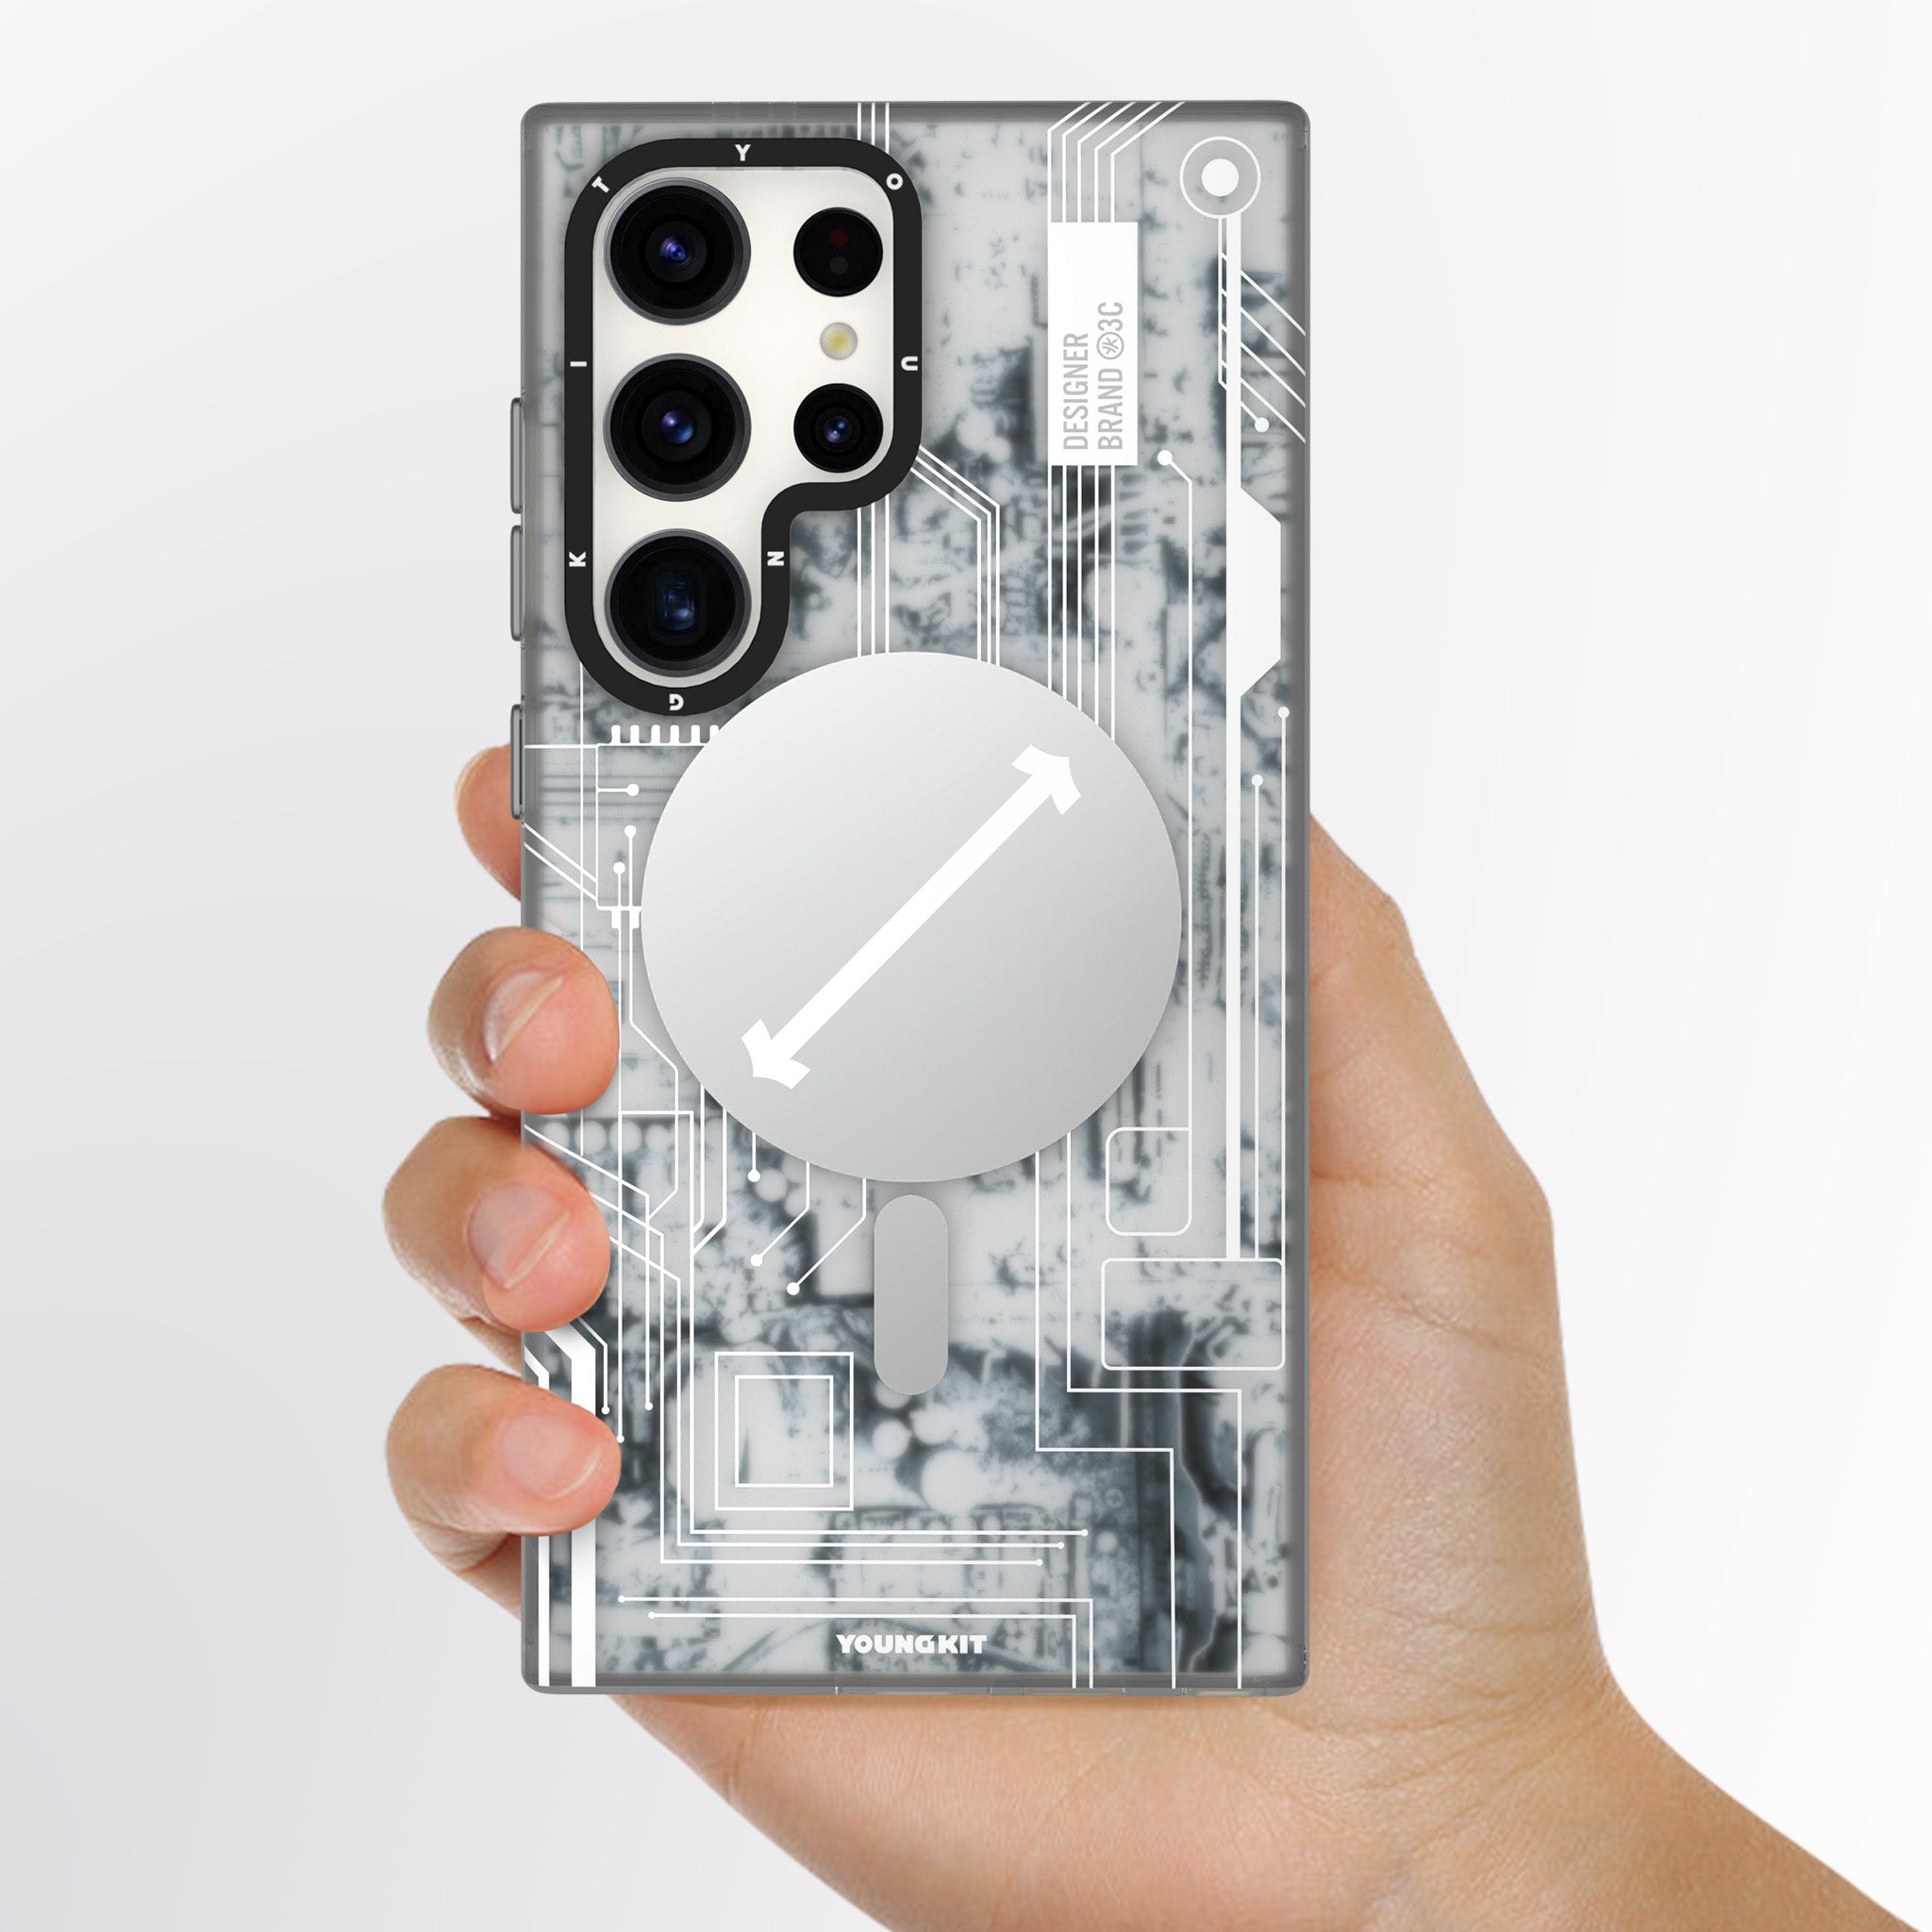 Futuristic Circuit Board Magsafe-Galaxy S24